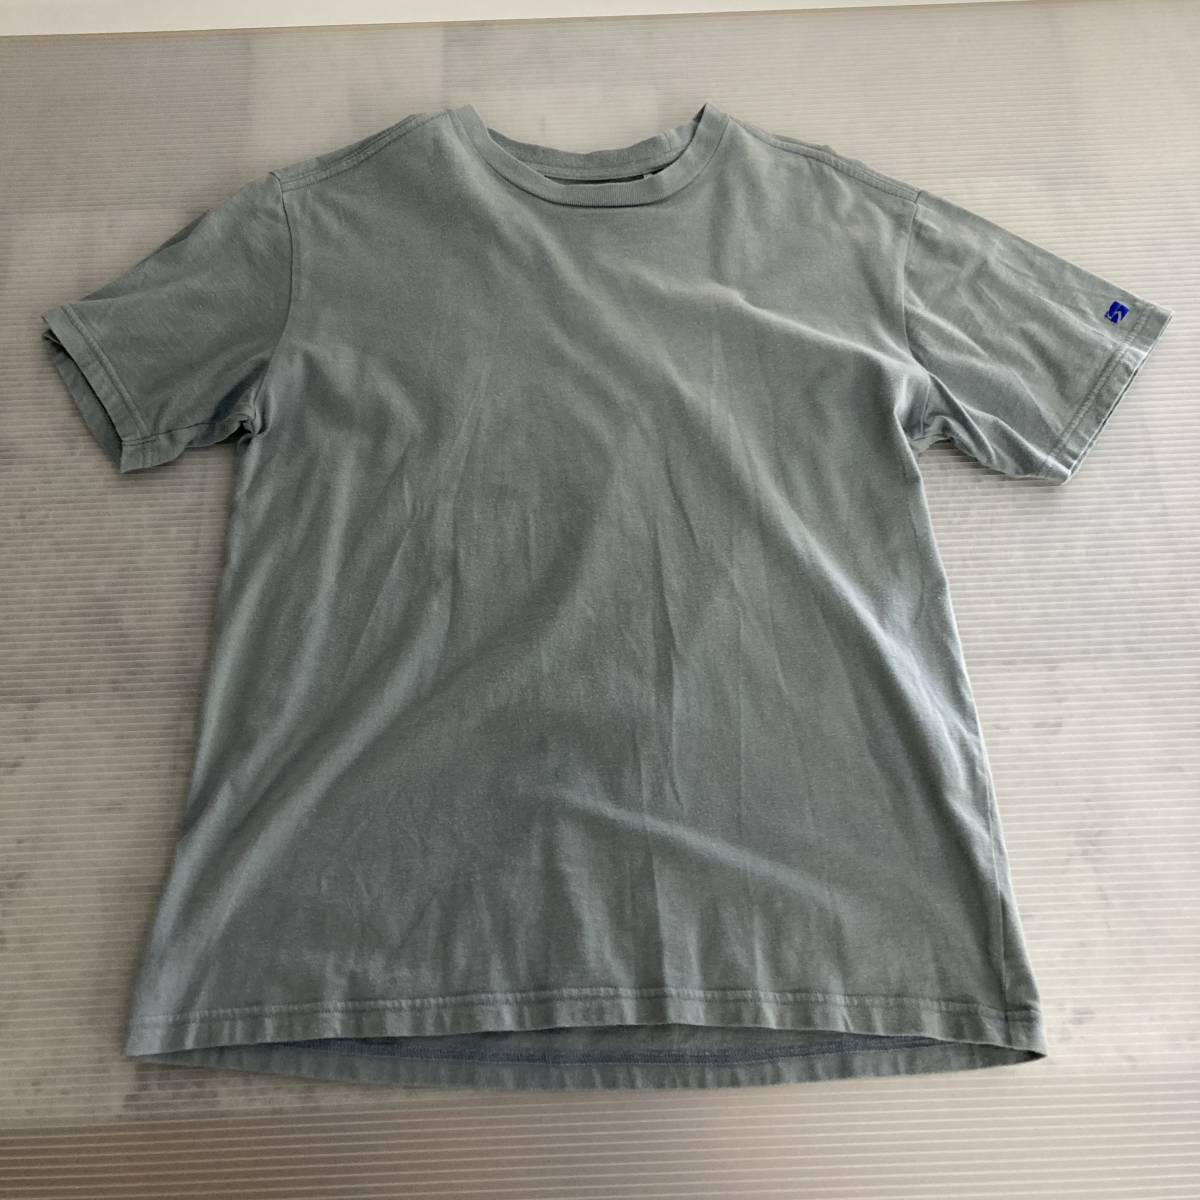 ファイントラック finetrack Tシャツ M 衣類 ウエア 登山 アウトドア 半袖 tmc02028725